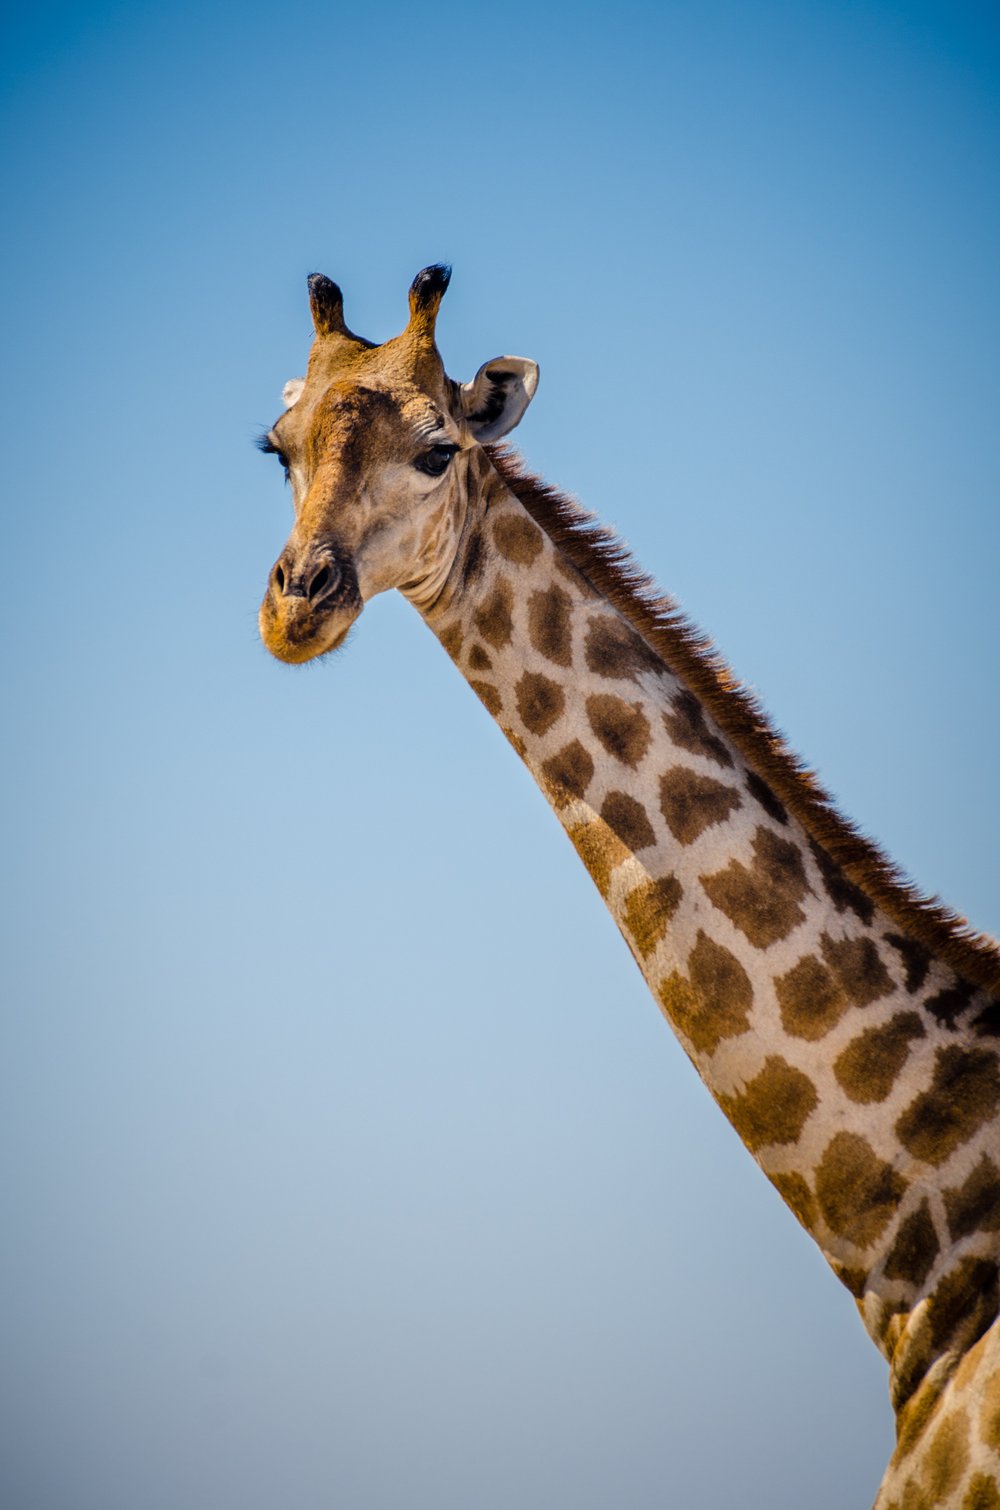 A giraffe in Namibia